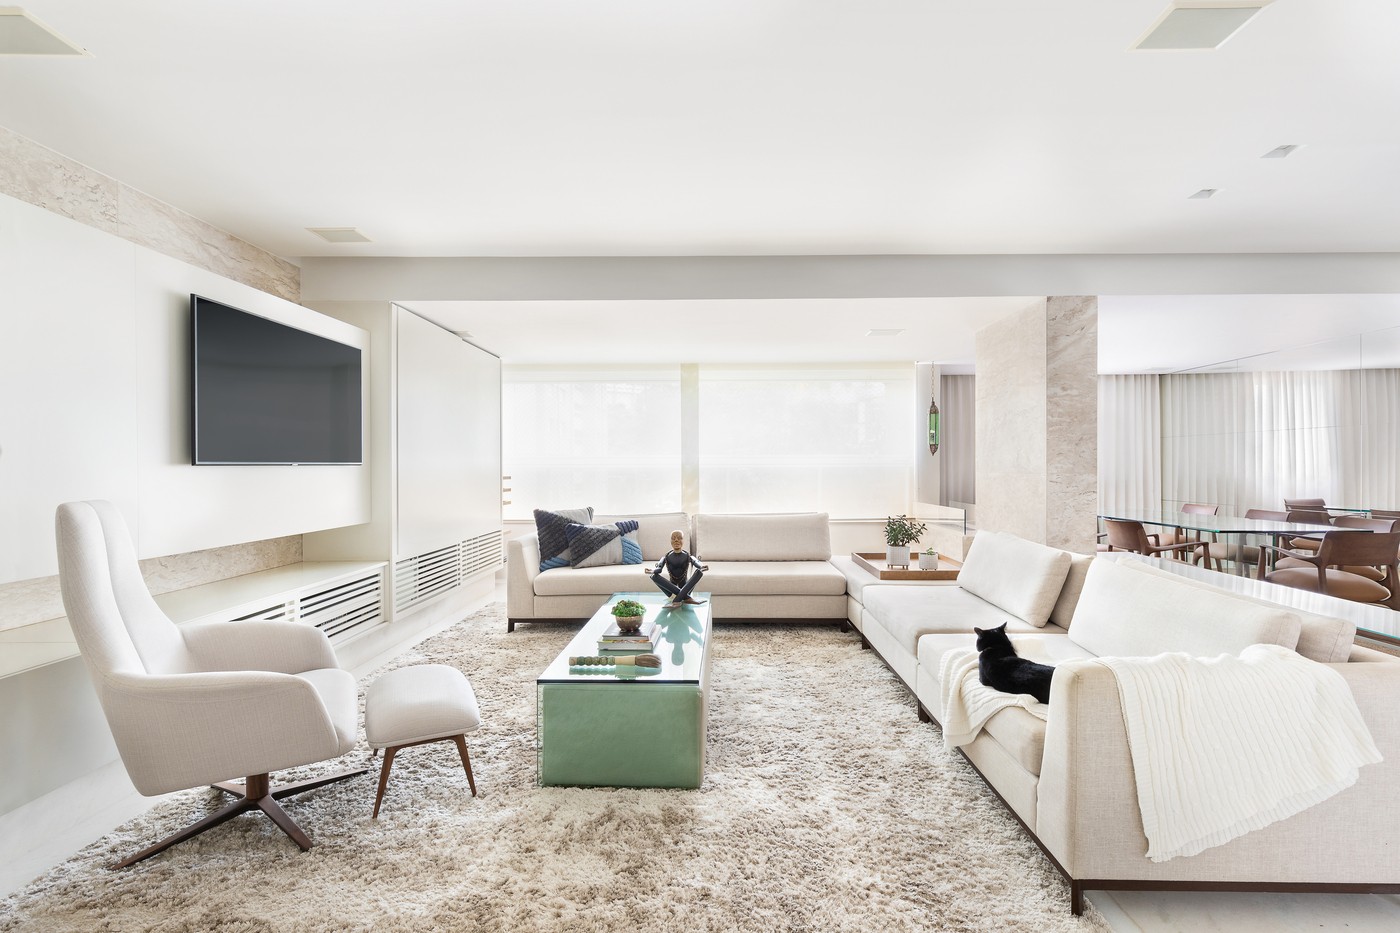 Décor do dia: estilo minimalista e mármore branco na sala de estar (Foto: Ivan Araújo)